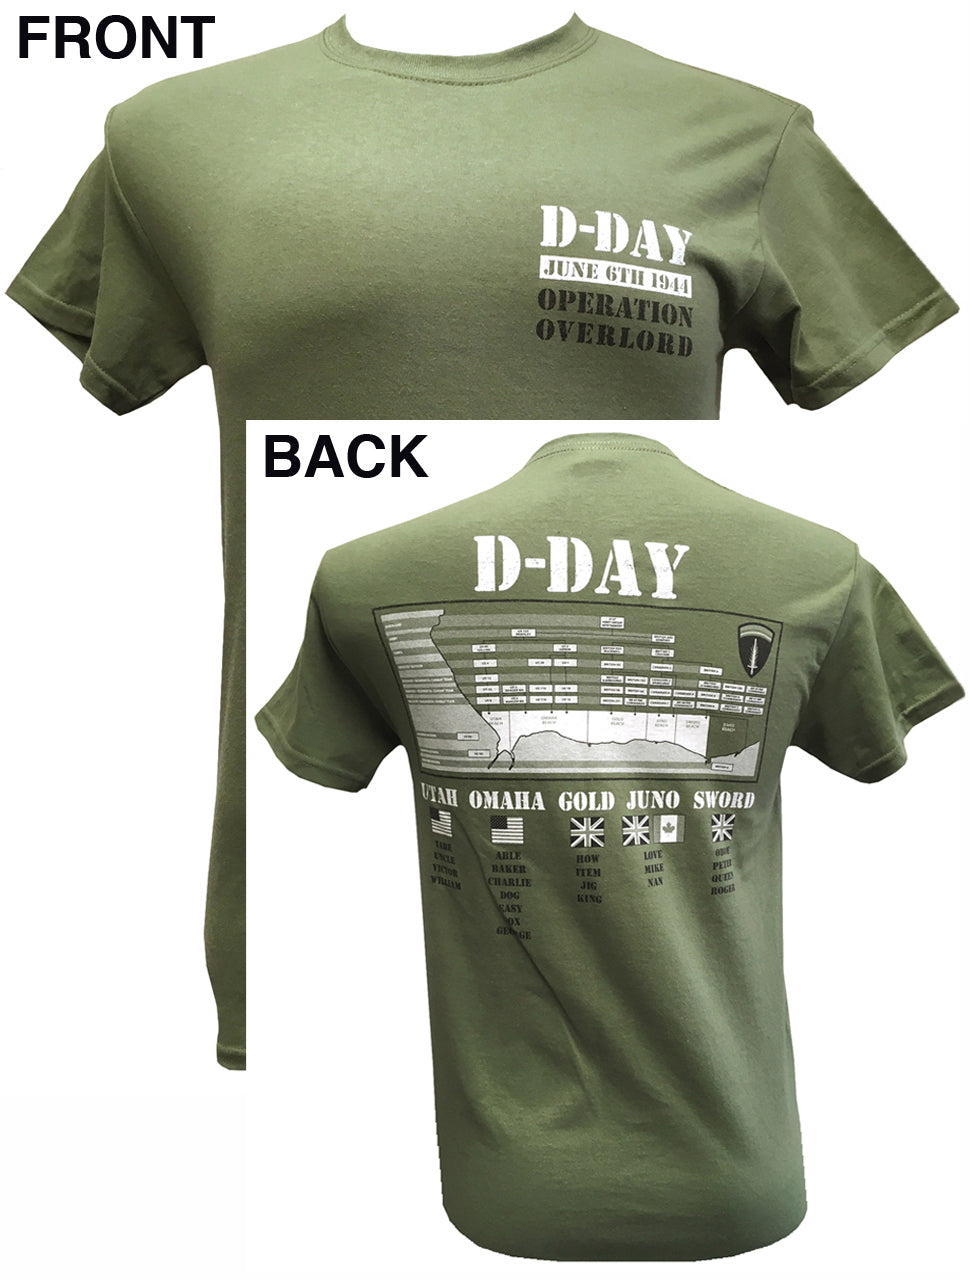 D-DAY LANDINGS June 6th 1944  Utah Omaha Gold Juno Sword Beaches Motif Back Print T Shirt